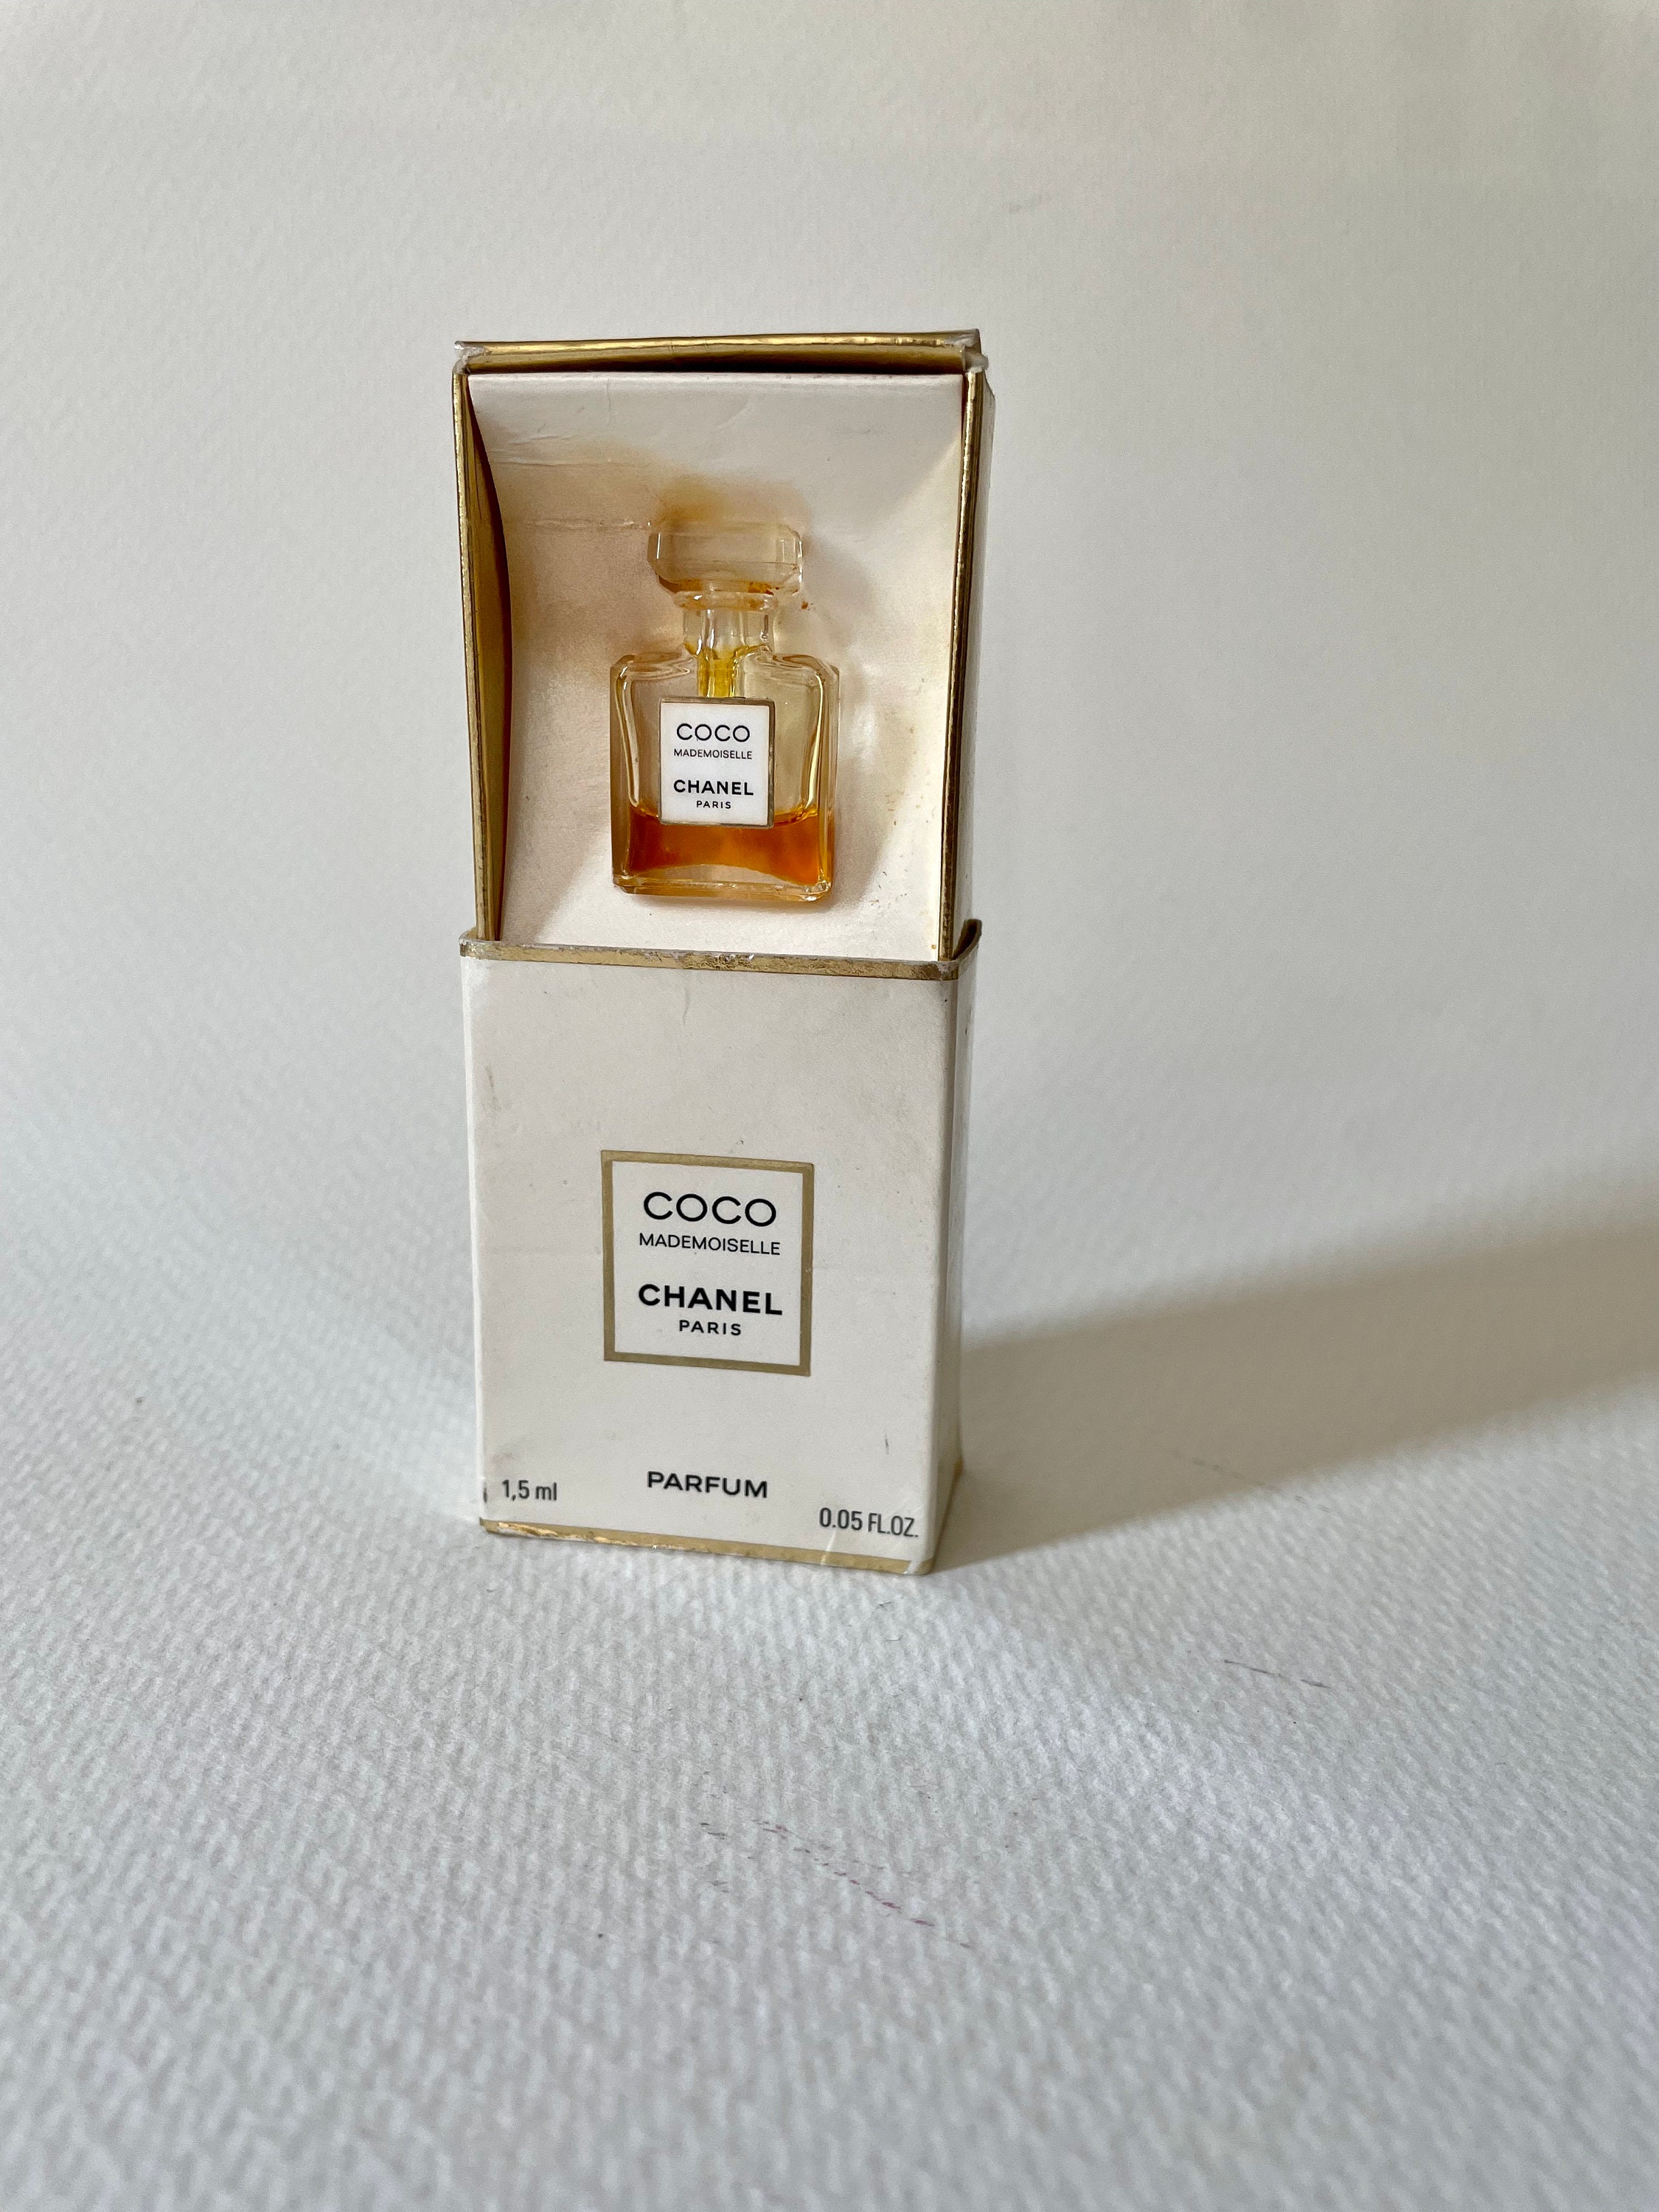 Vintage Miniature Parfum Bottle With Original Box 